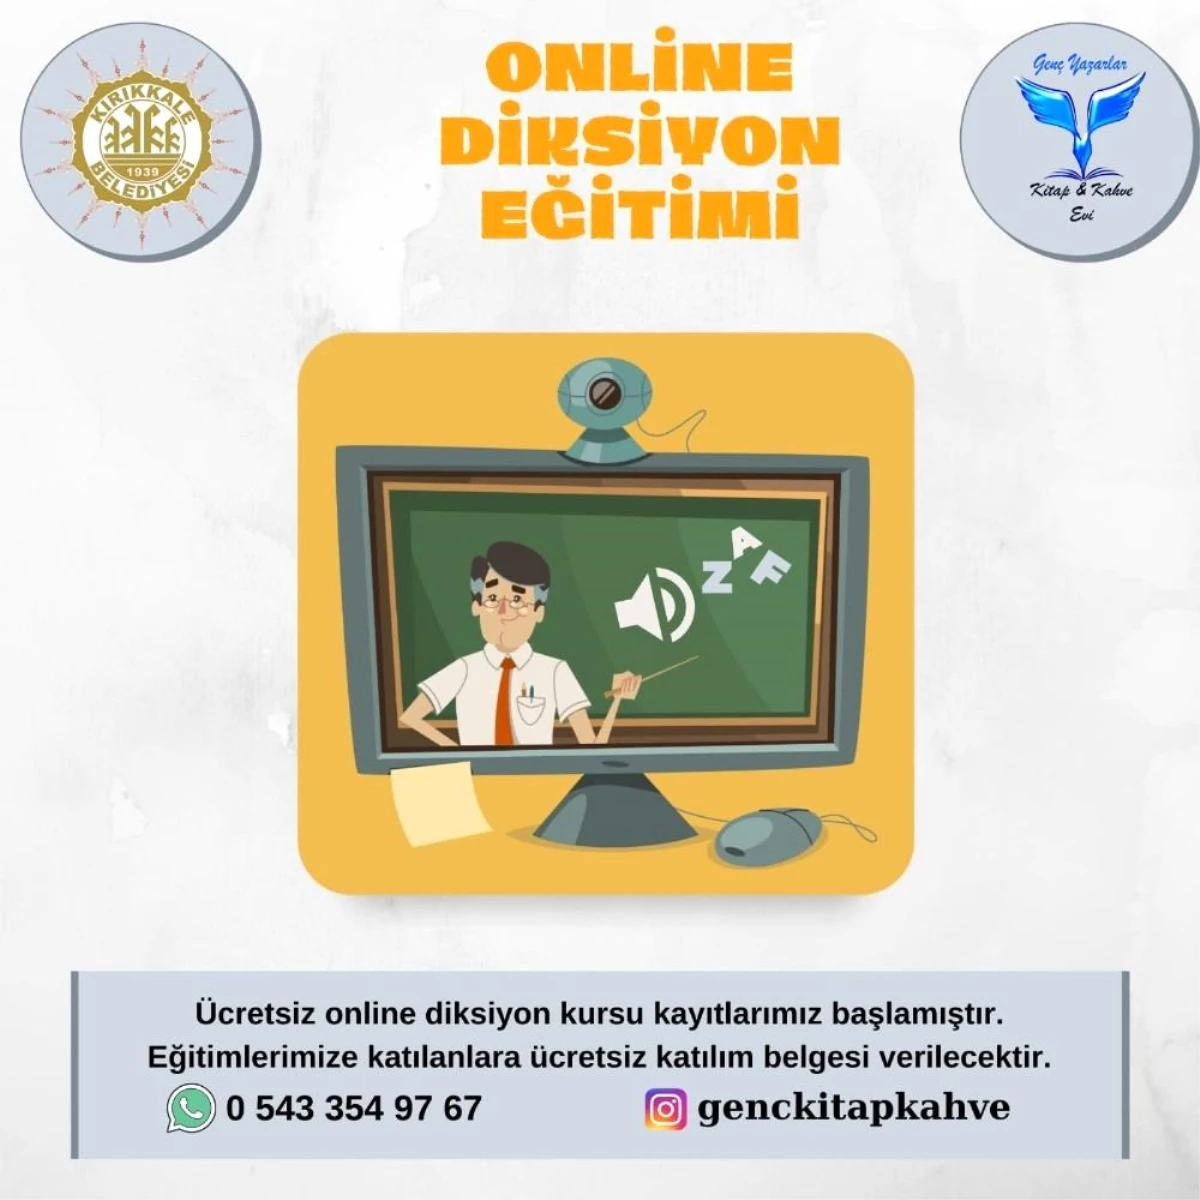 Kırıkkale Belediyesinden online ilk yardım ve diksiyon kursu